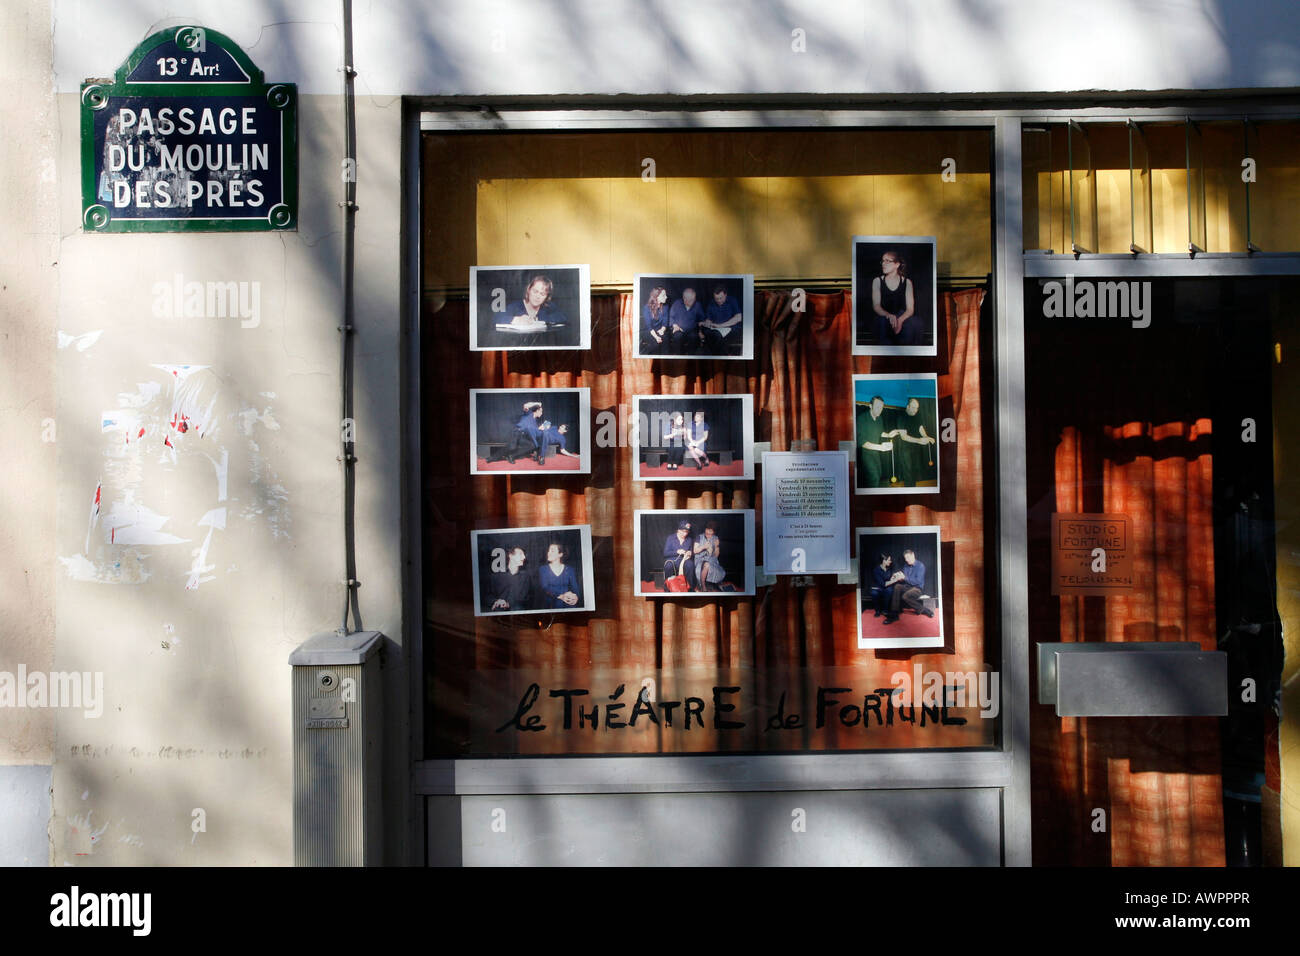 Theatre, Quartier de la Butte aux Cailles, 13th arrondissement, Paris, France, Europe Stock Photo